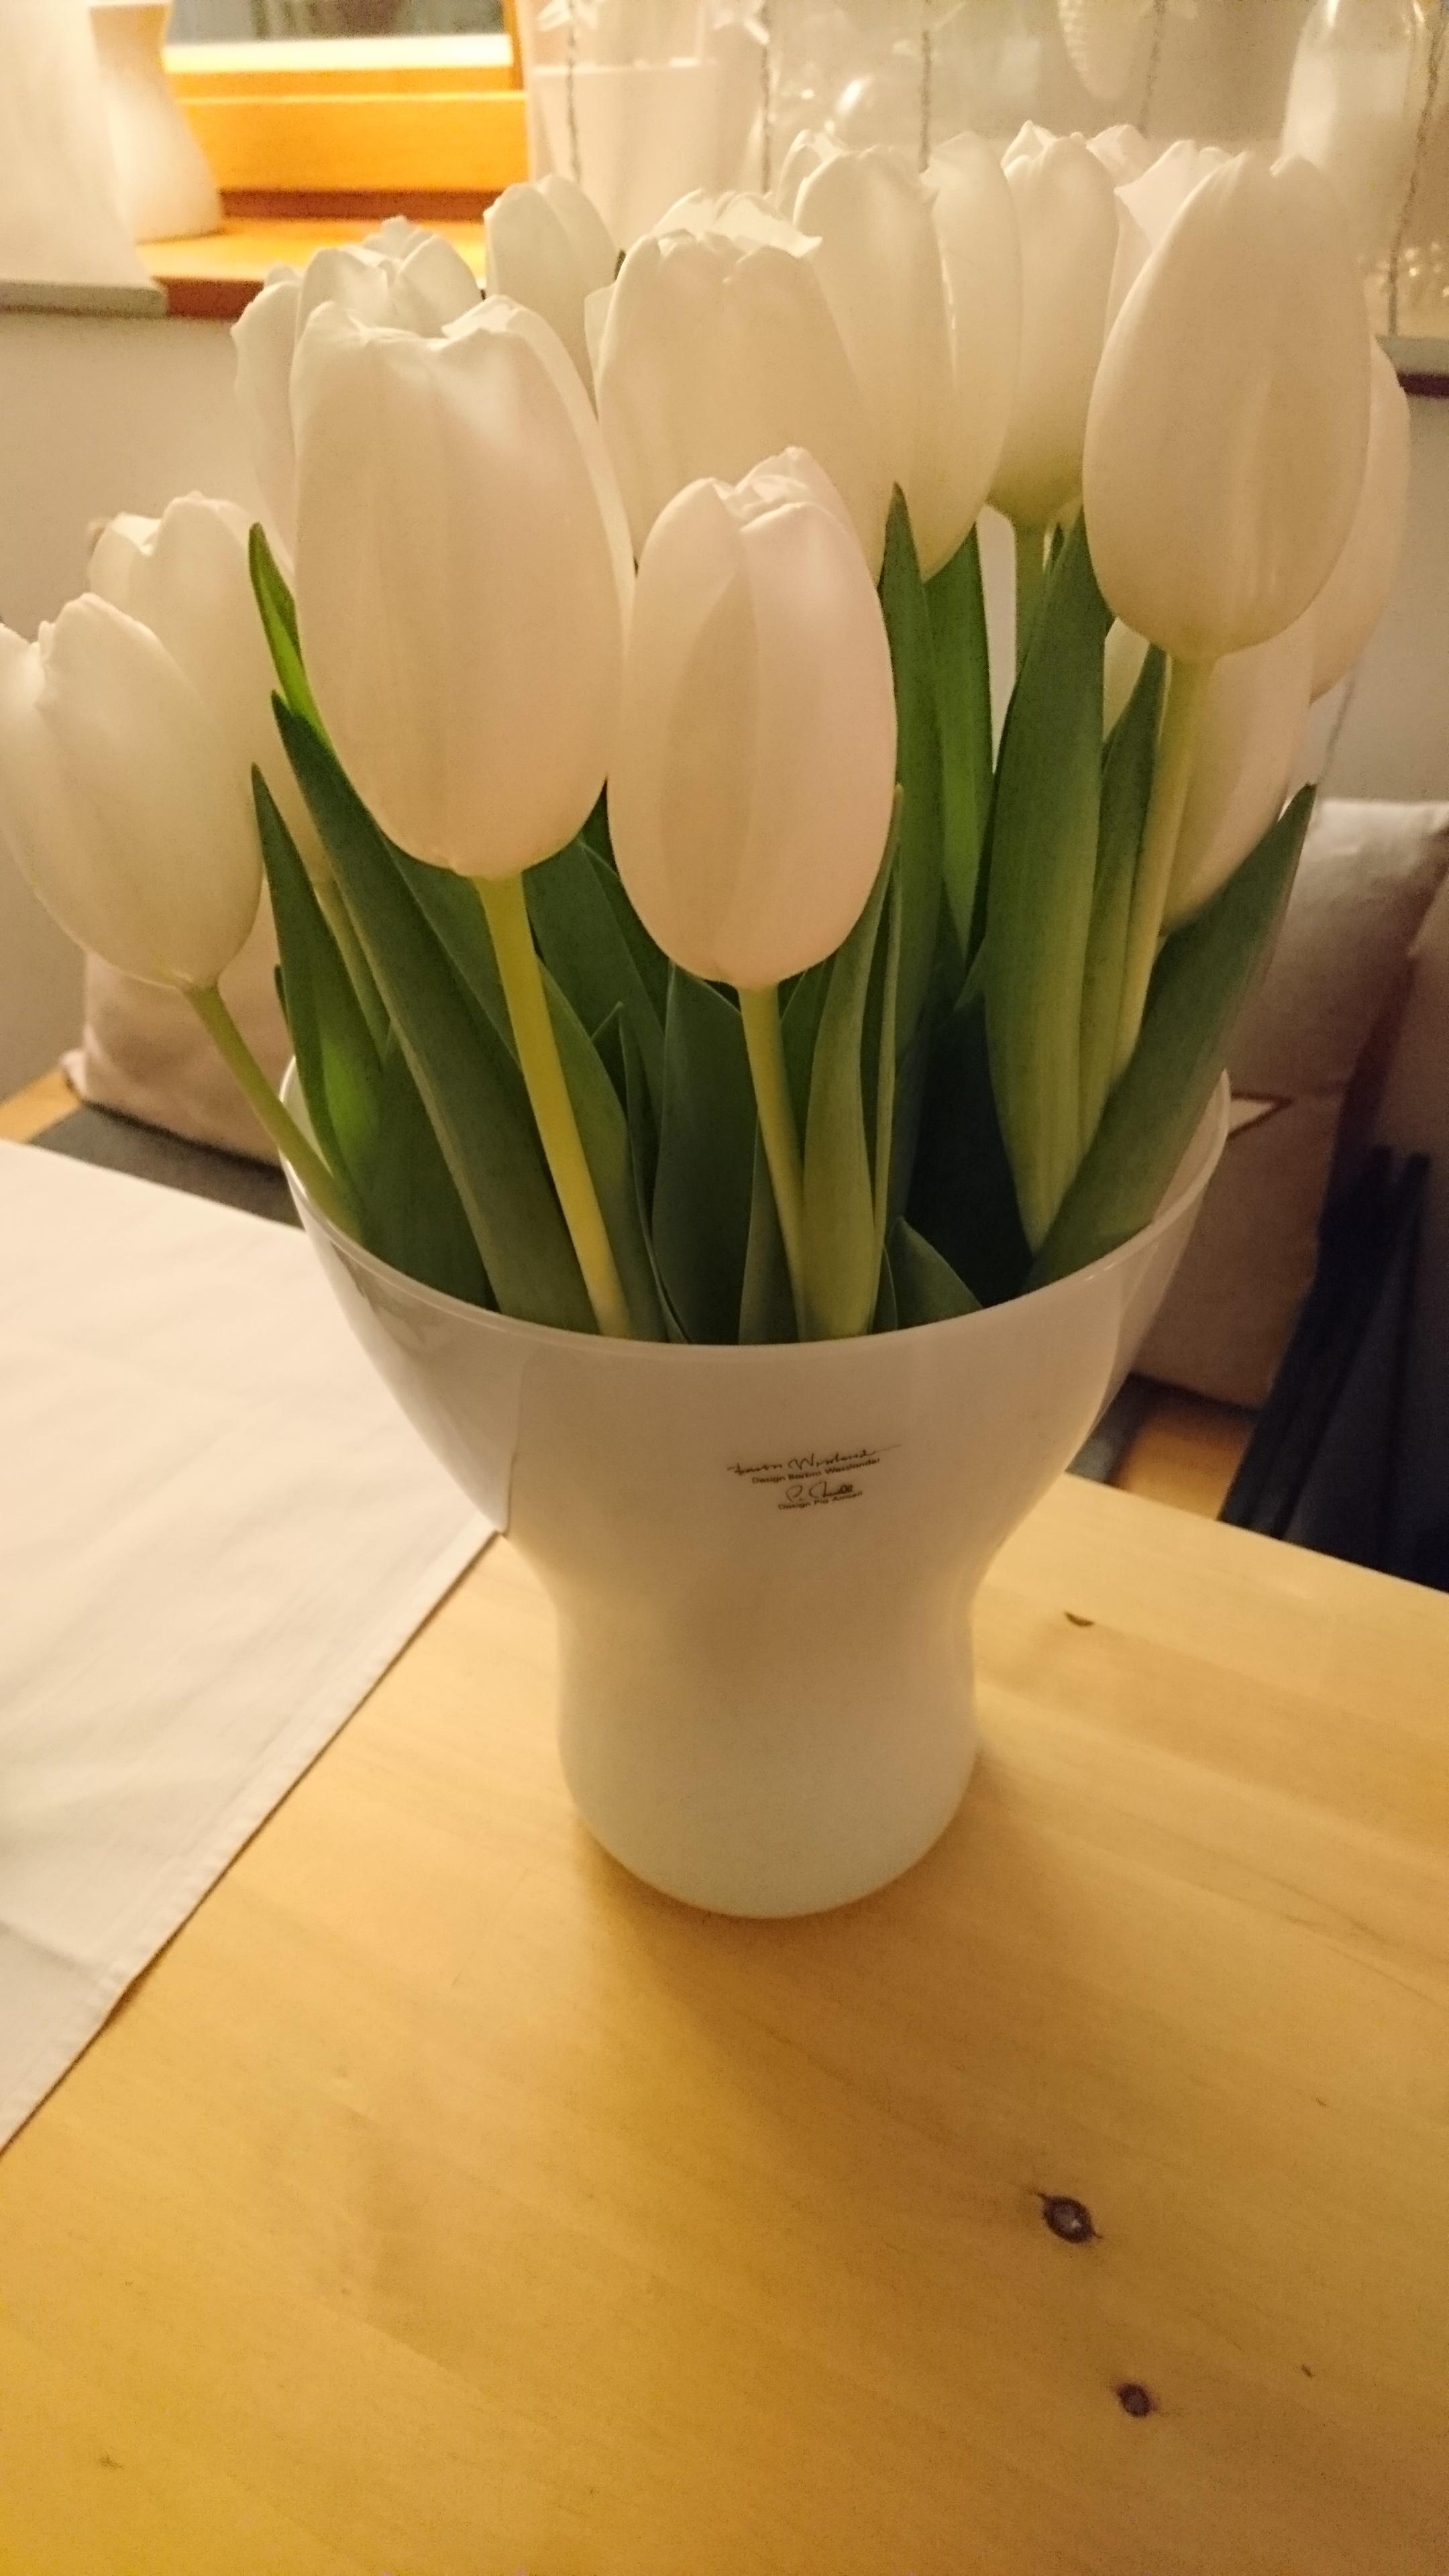 Die ersten #Tulpen im Neuen Jahr. Ganz in Weiß - passend zur Schneepracht draußen 🌨️

#freshflowerbirthday